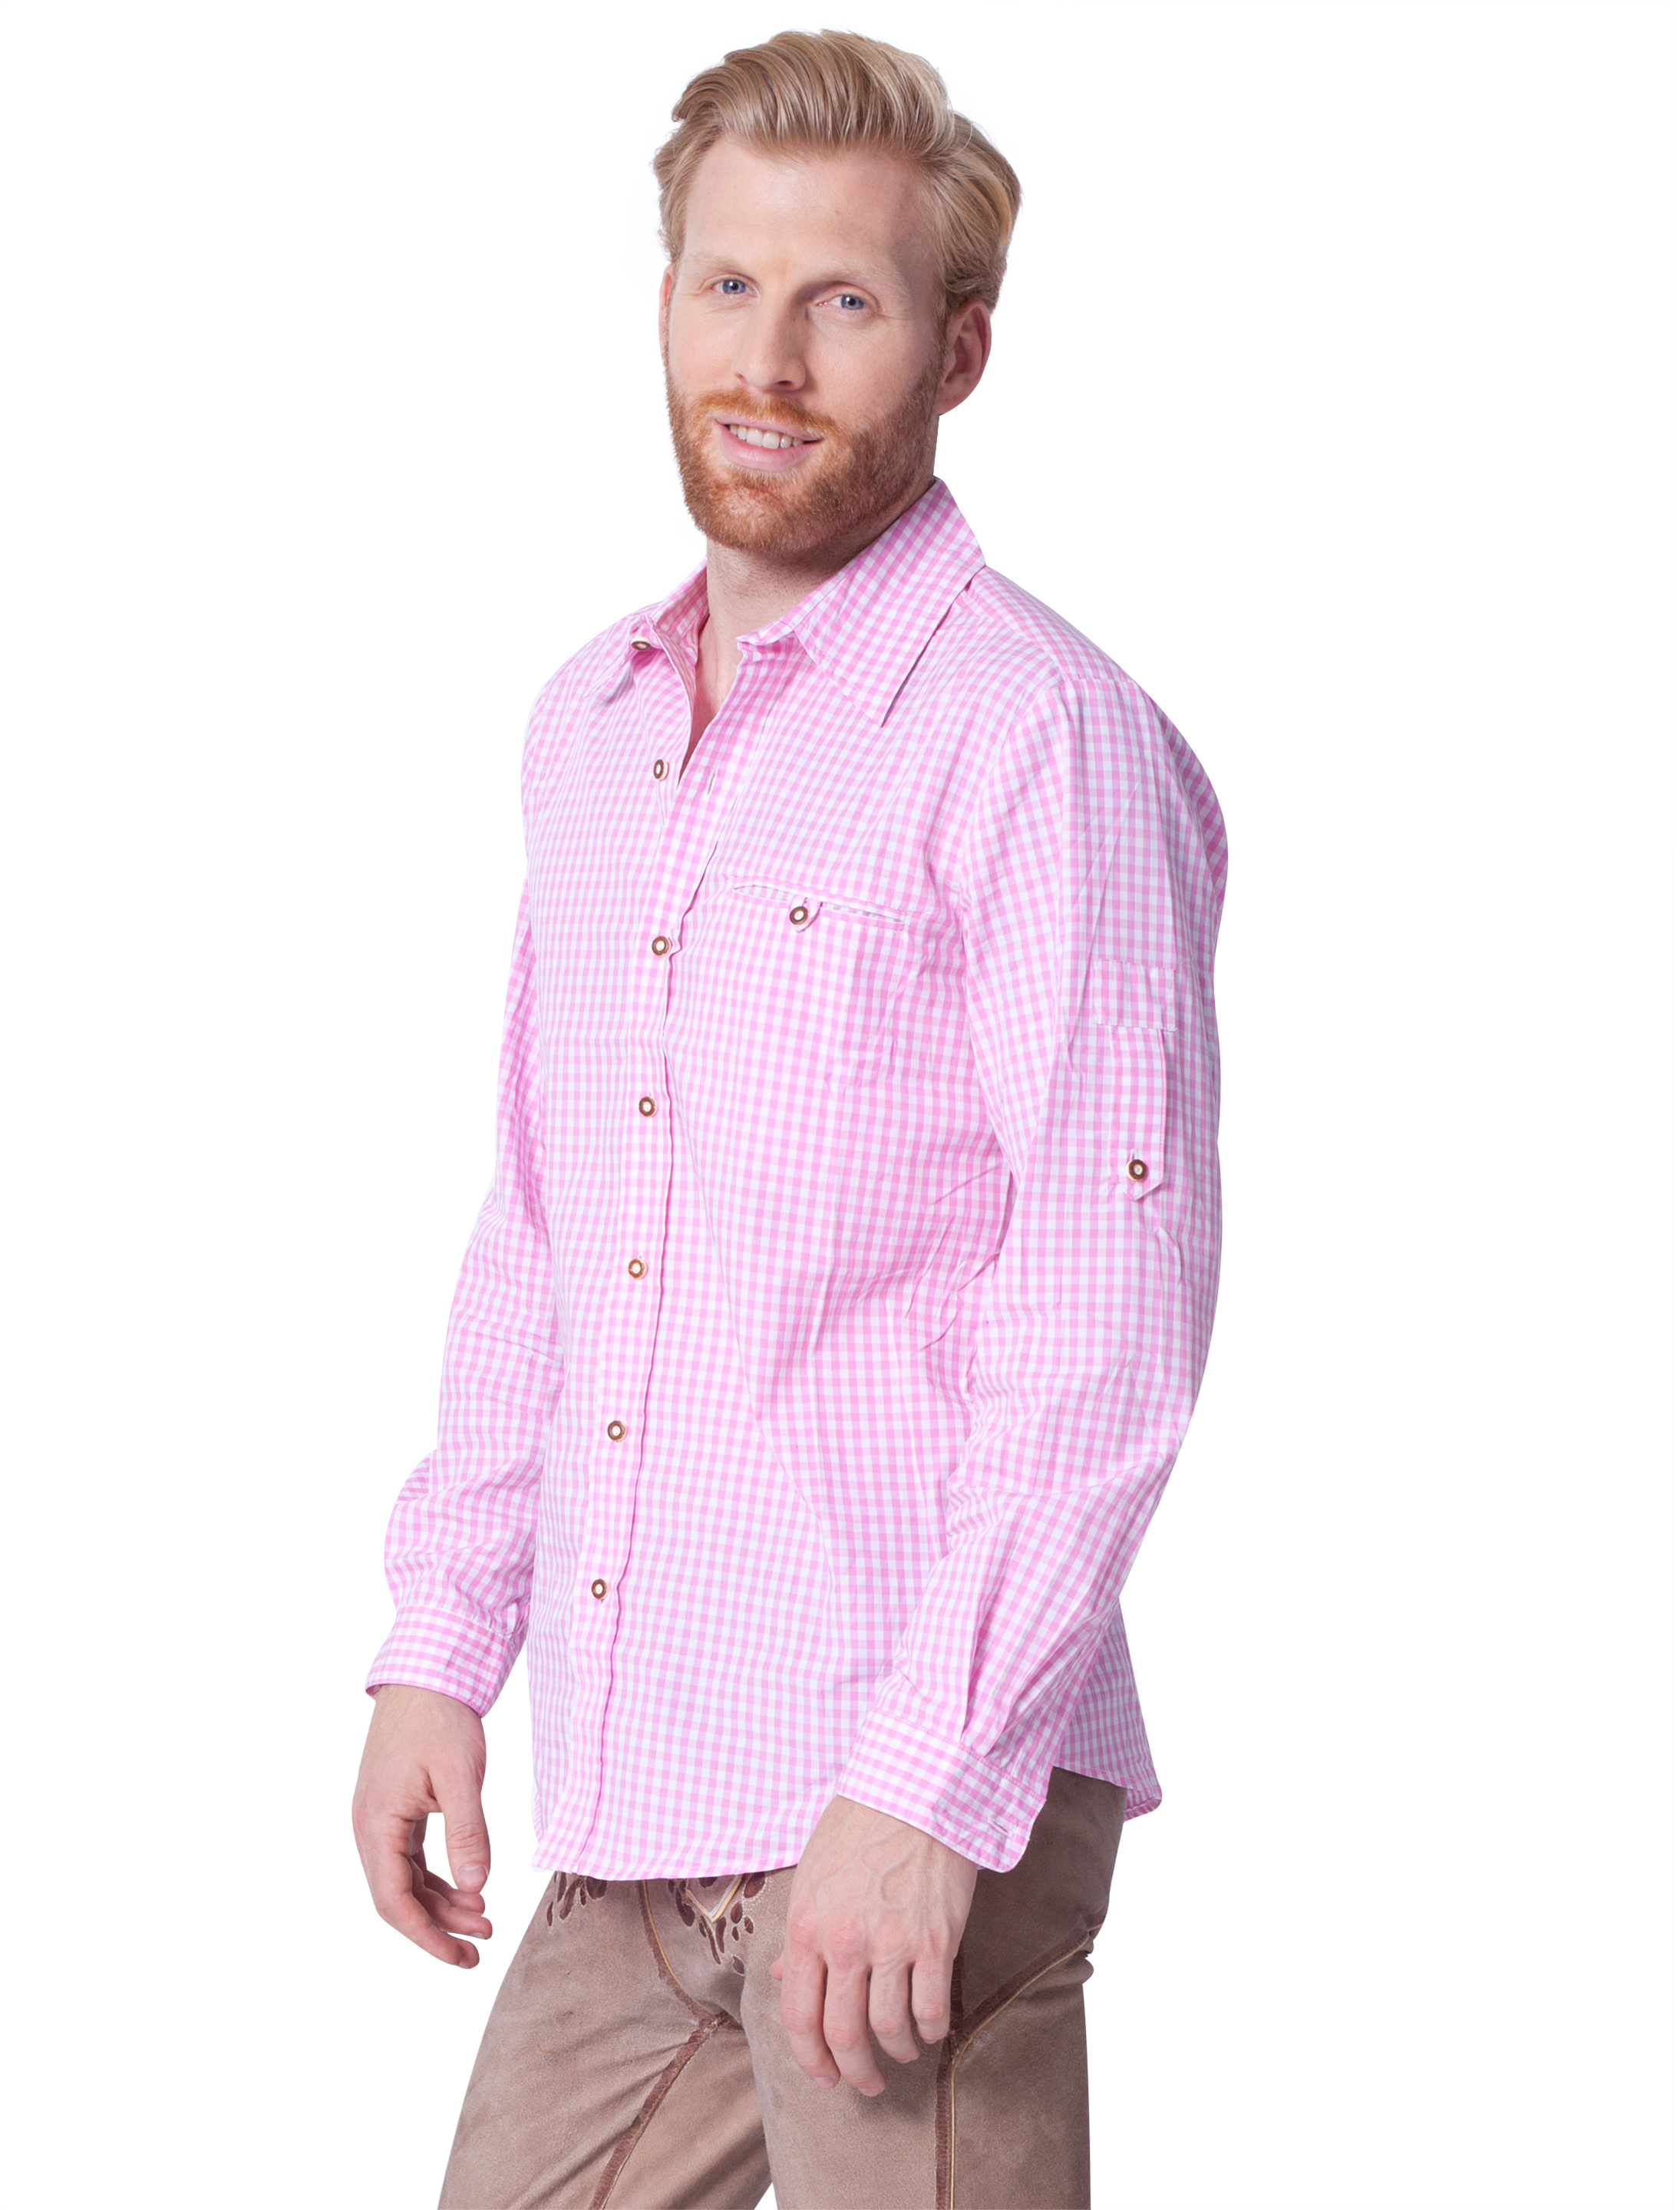 Trachtenhemd Herren pink/weiß L